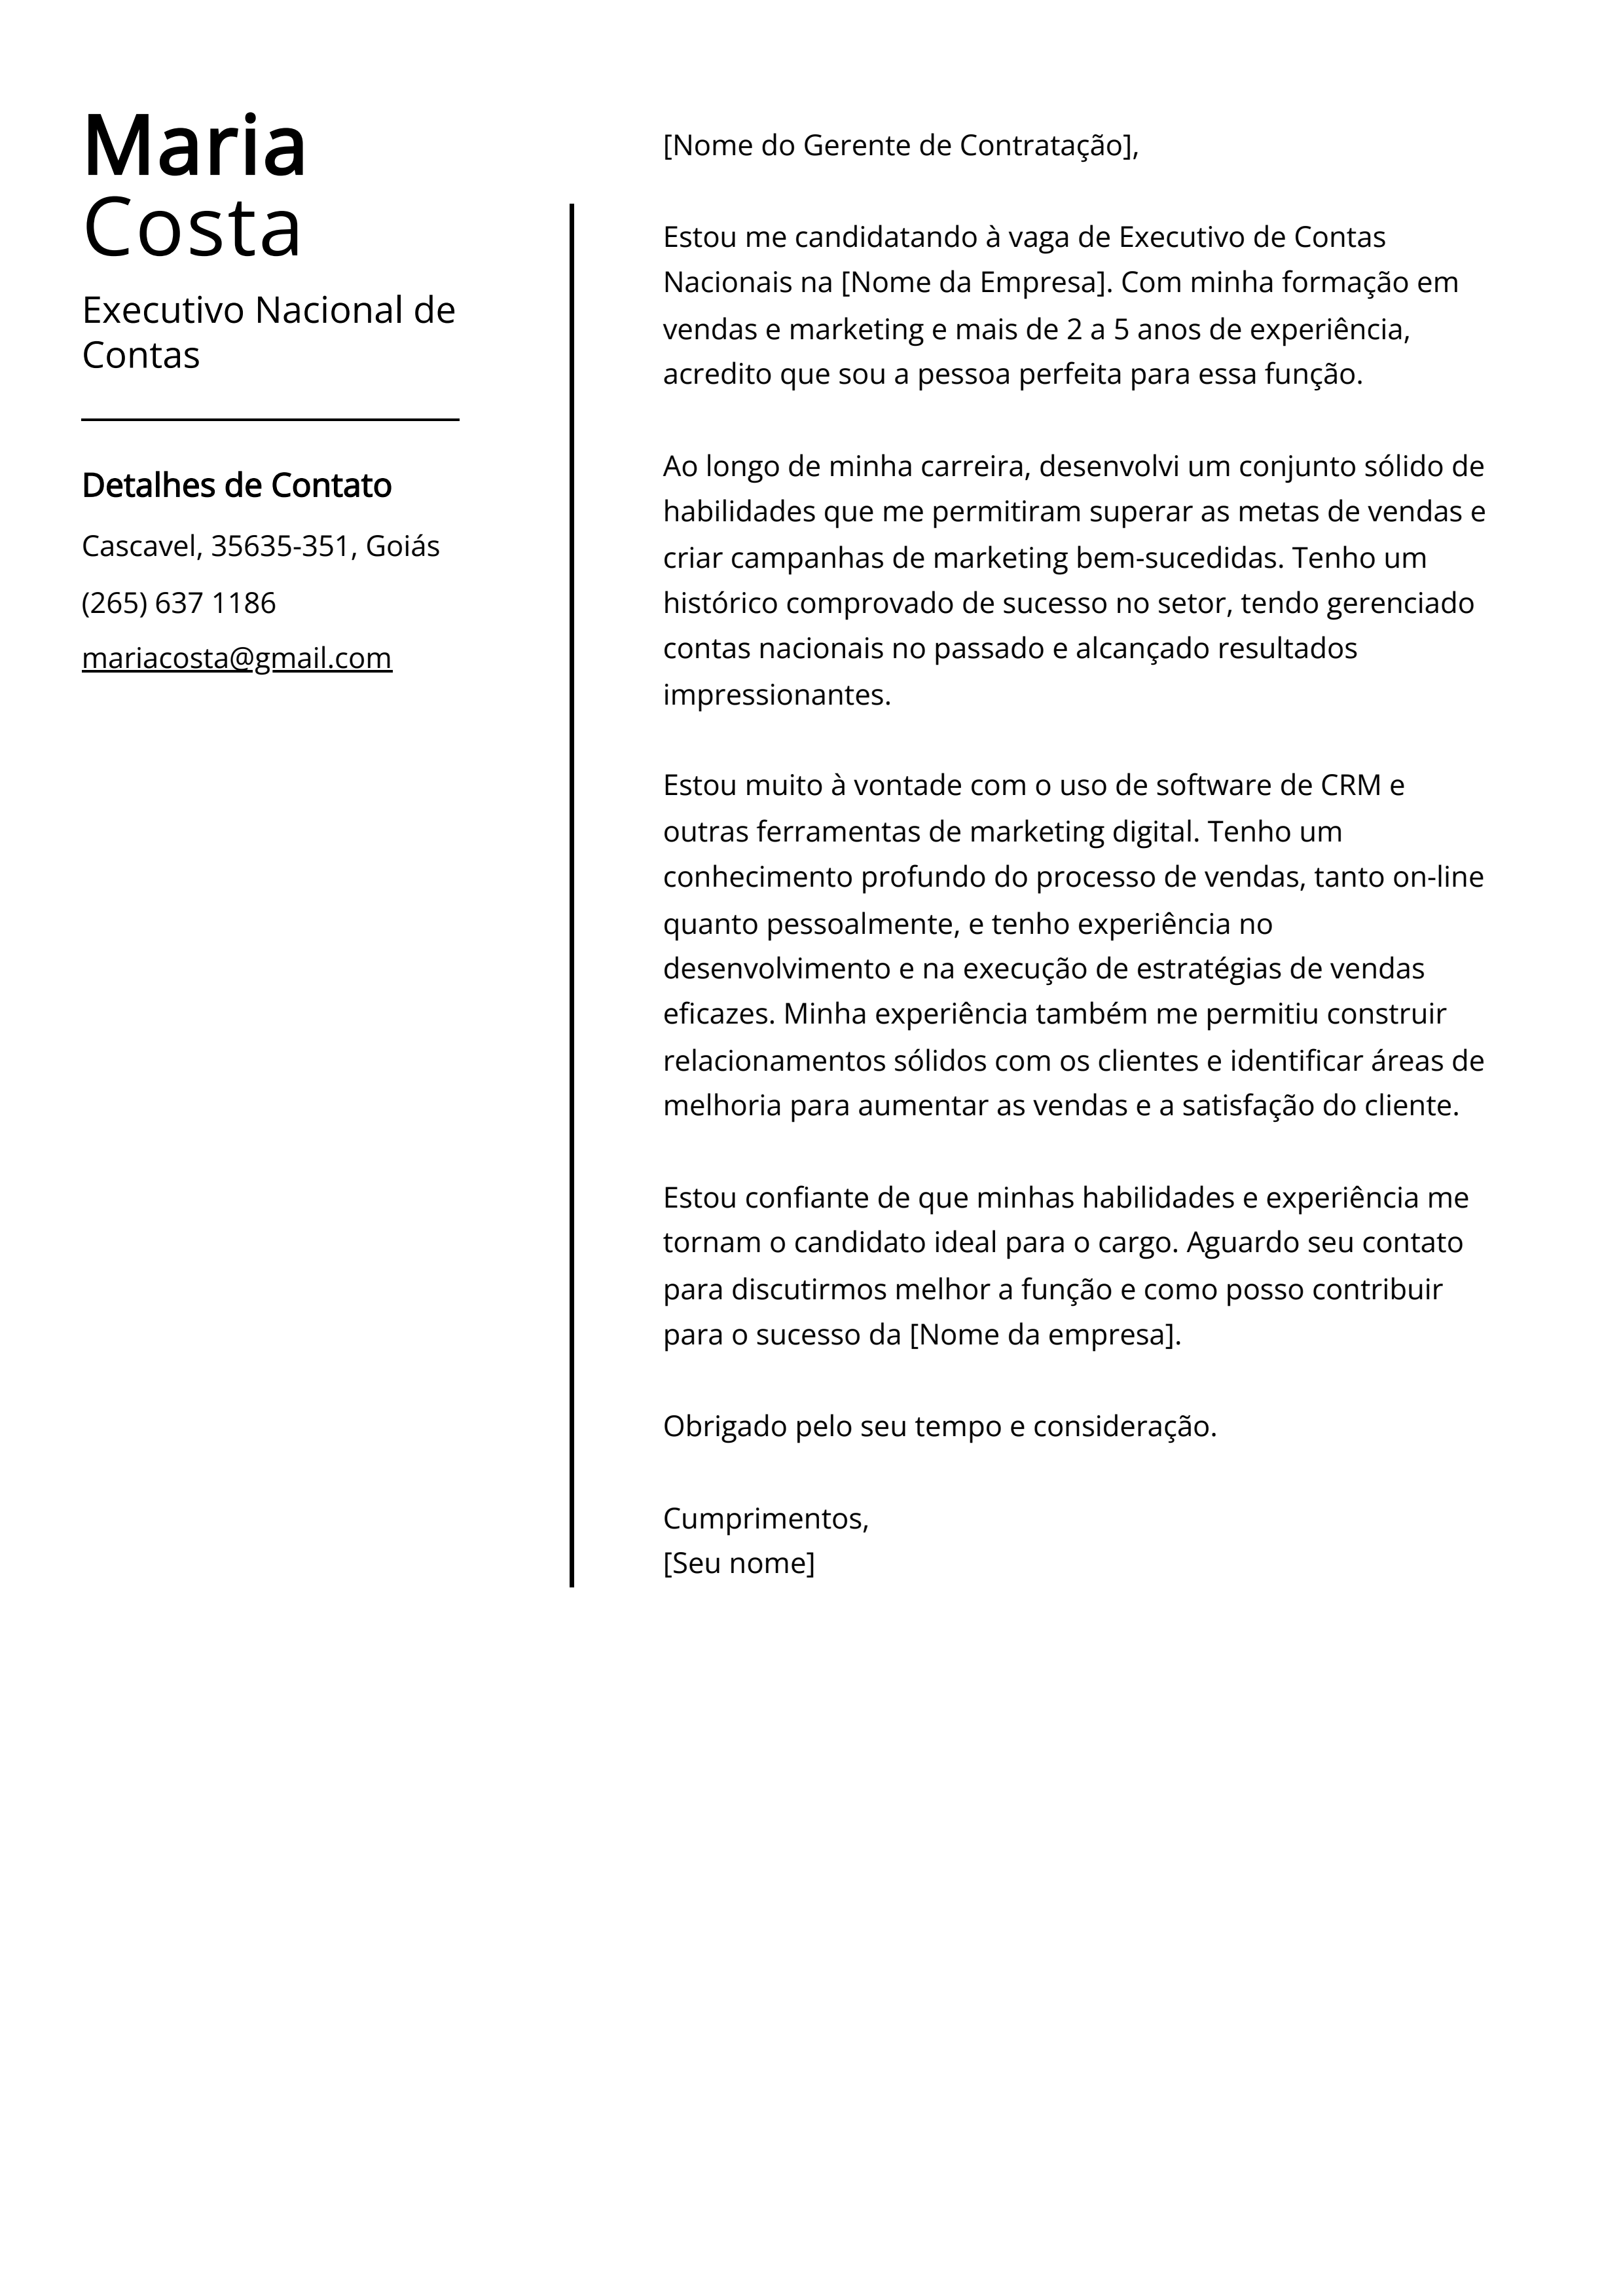 Exemplo de carta de apresentação do Executivo Nacional de Contas